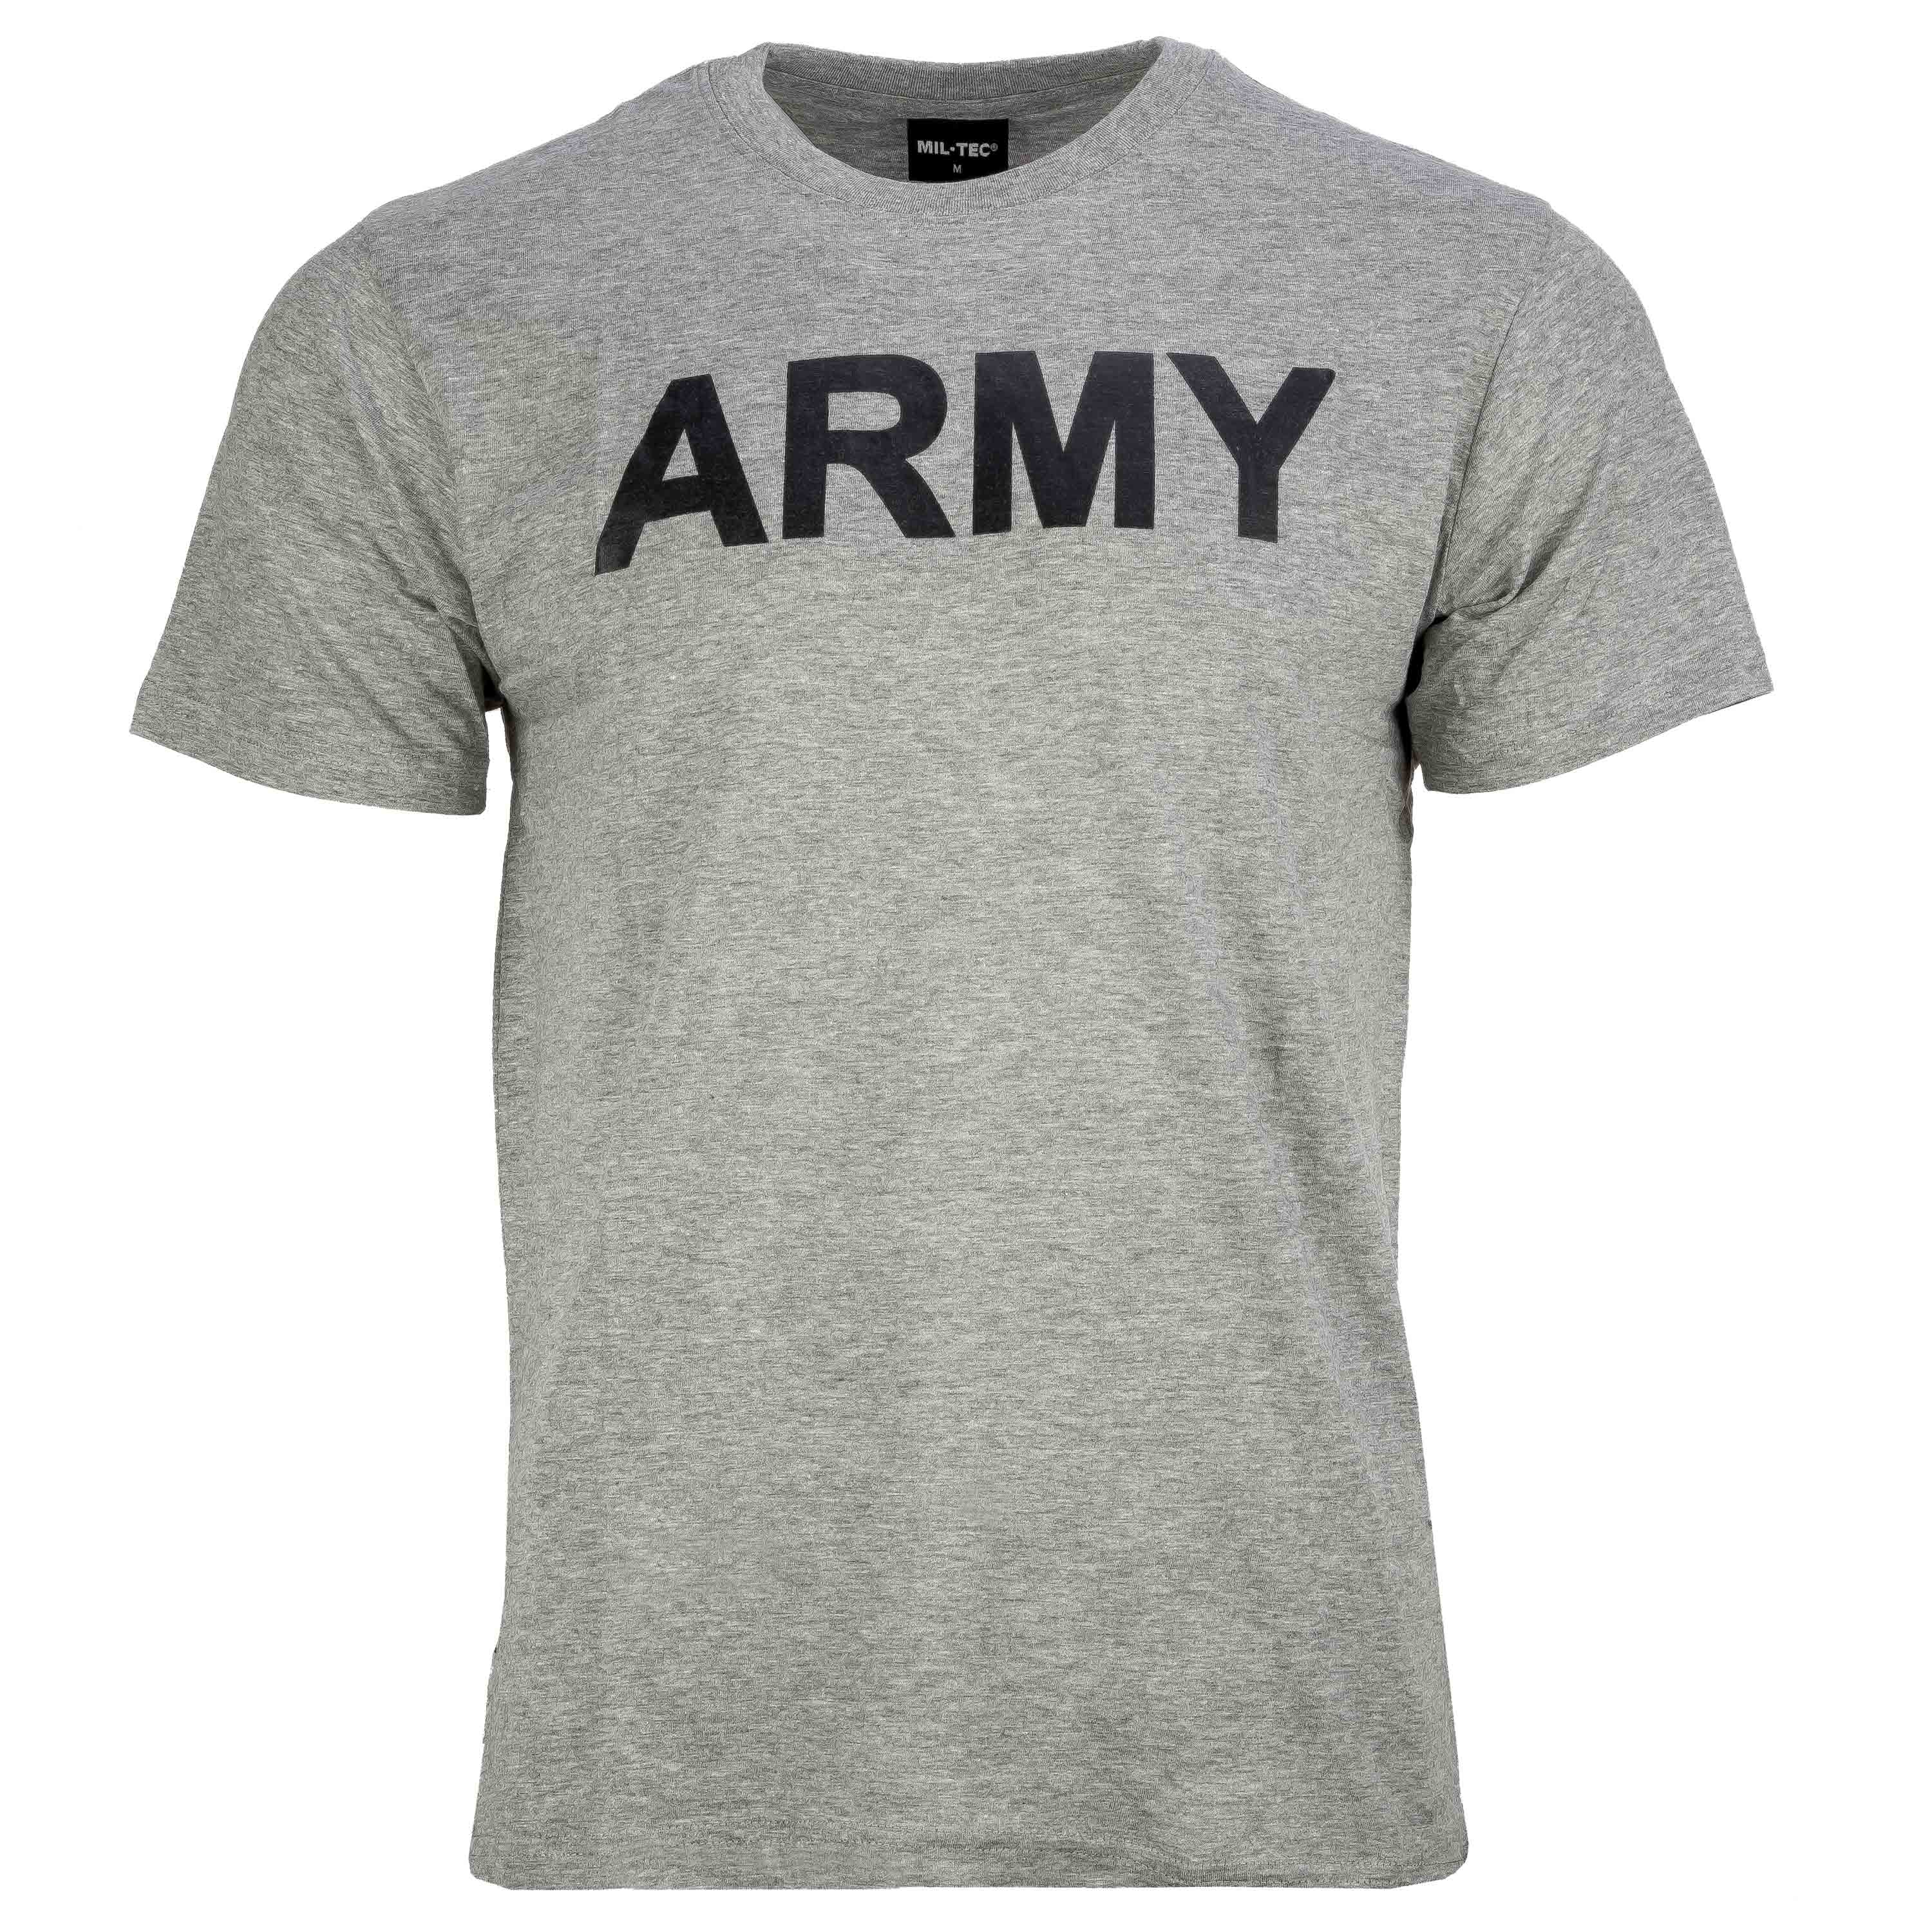 Comprar MilTec Camiseta Army gris en ASMC